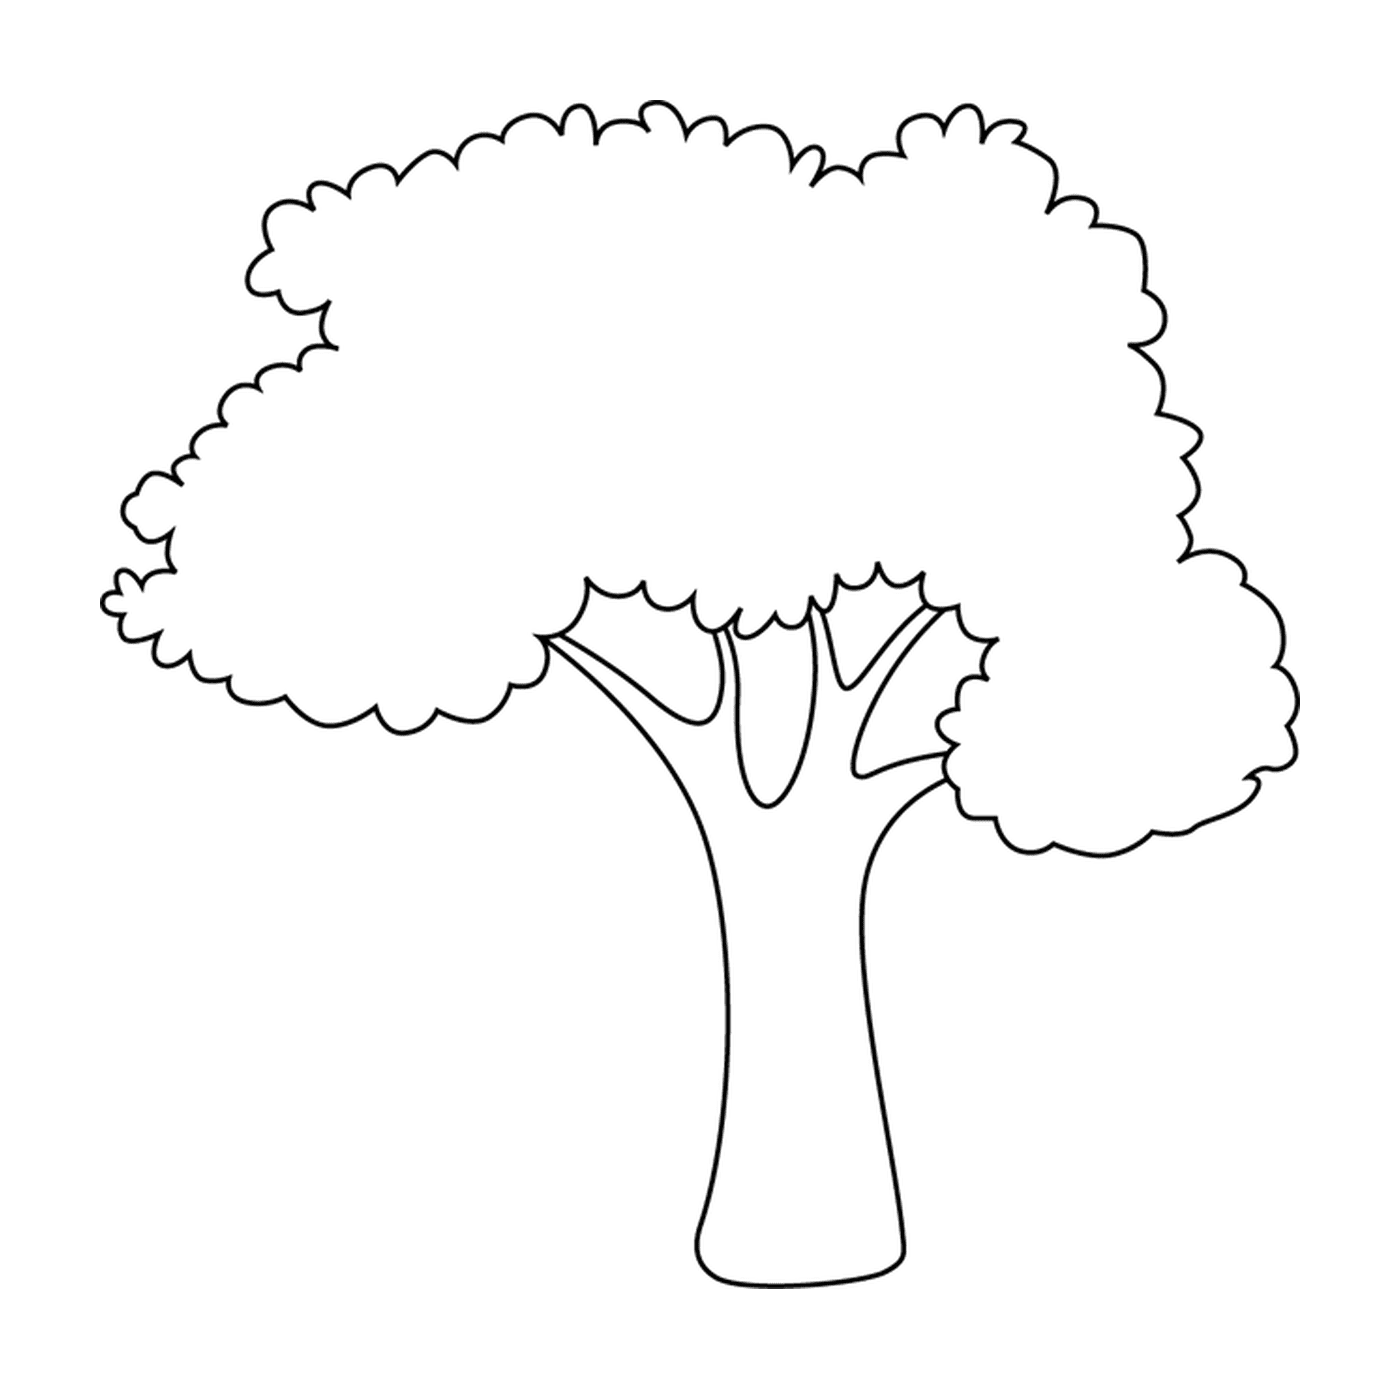  Un albero semplice e semplice 